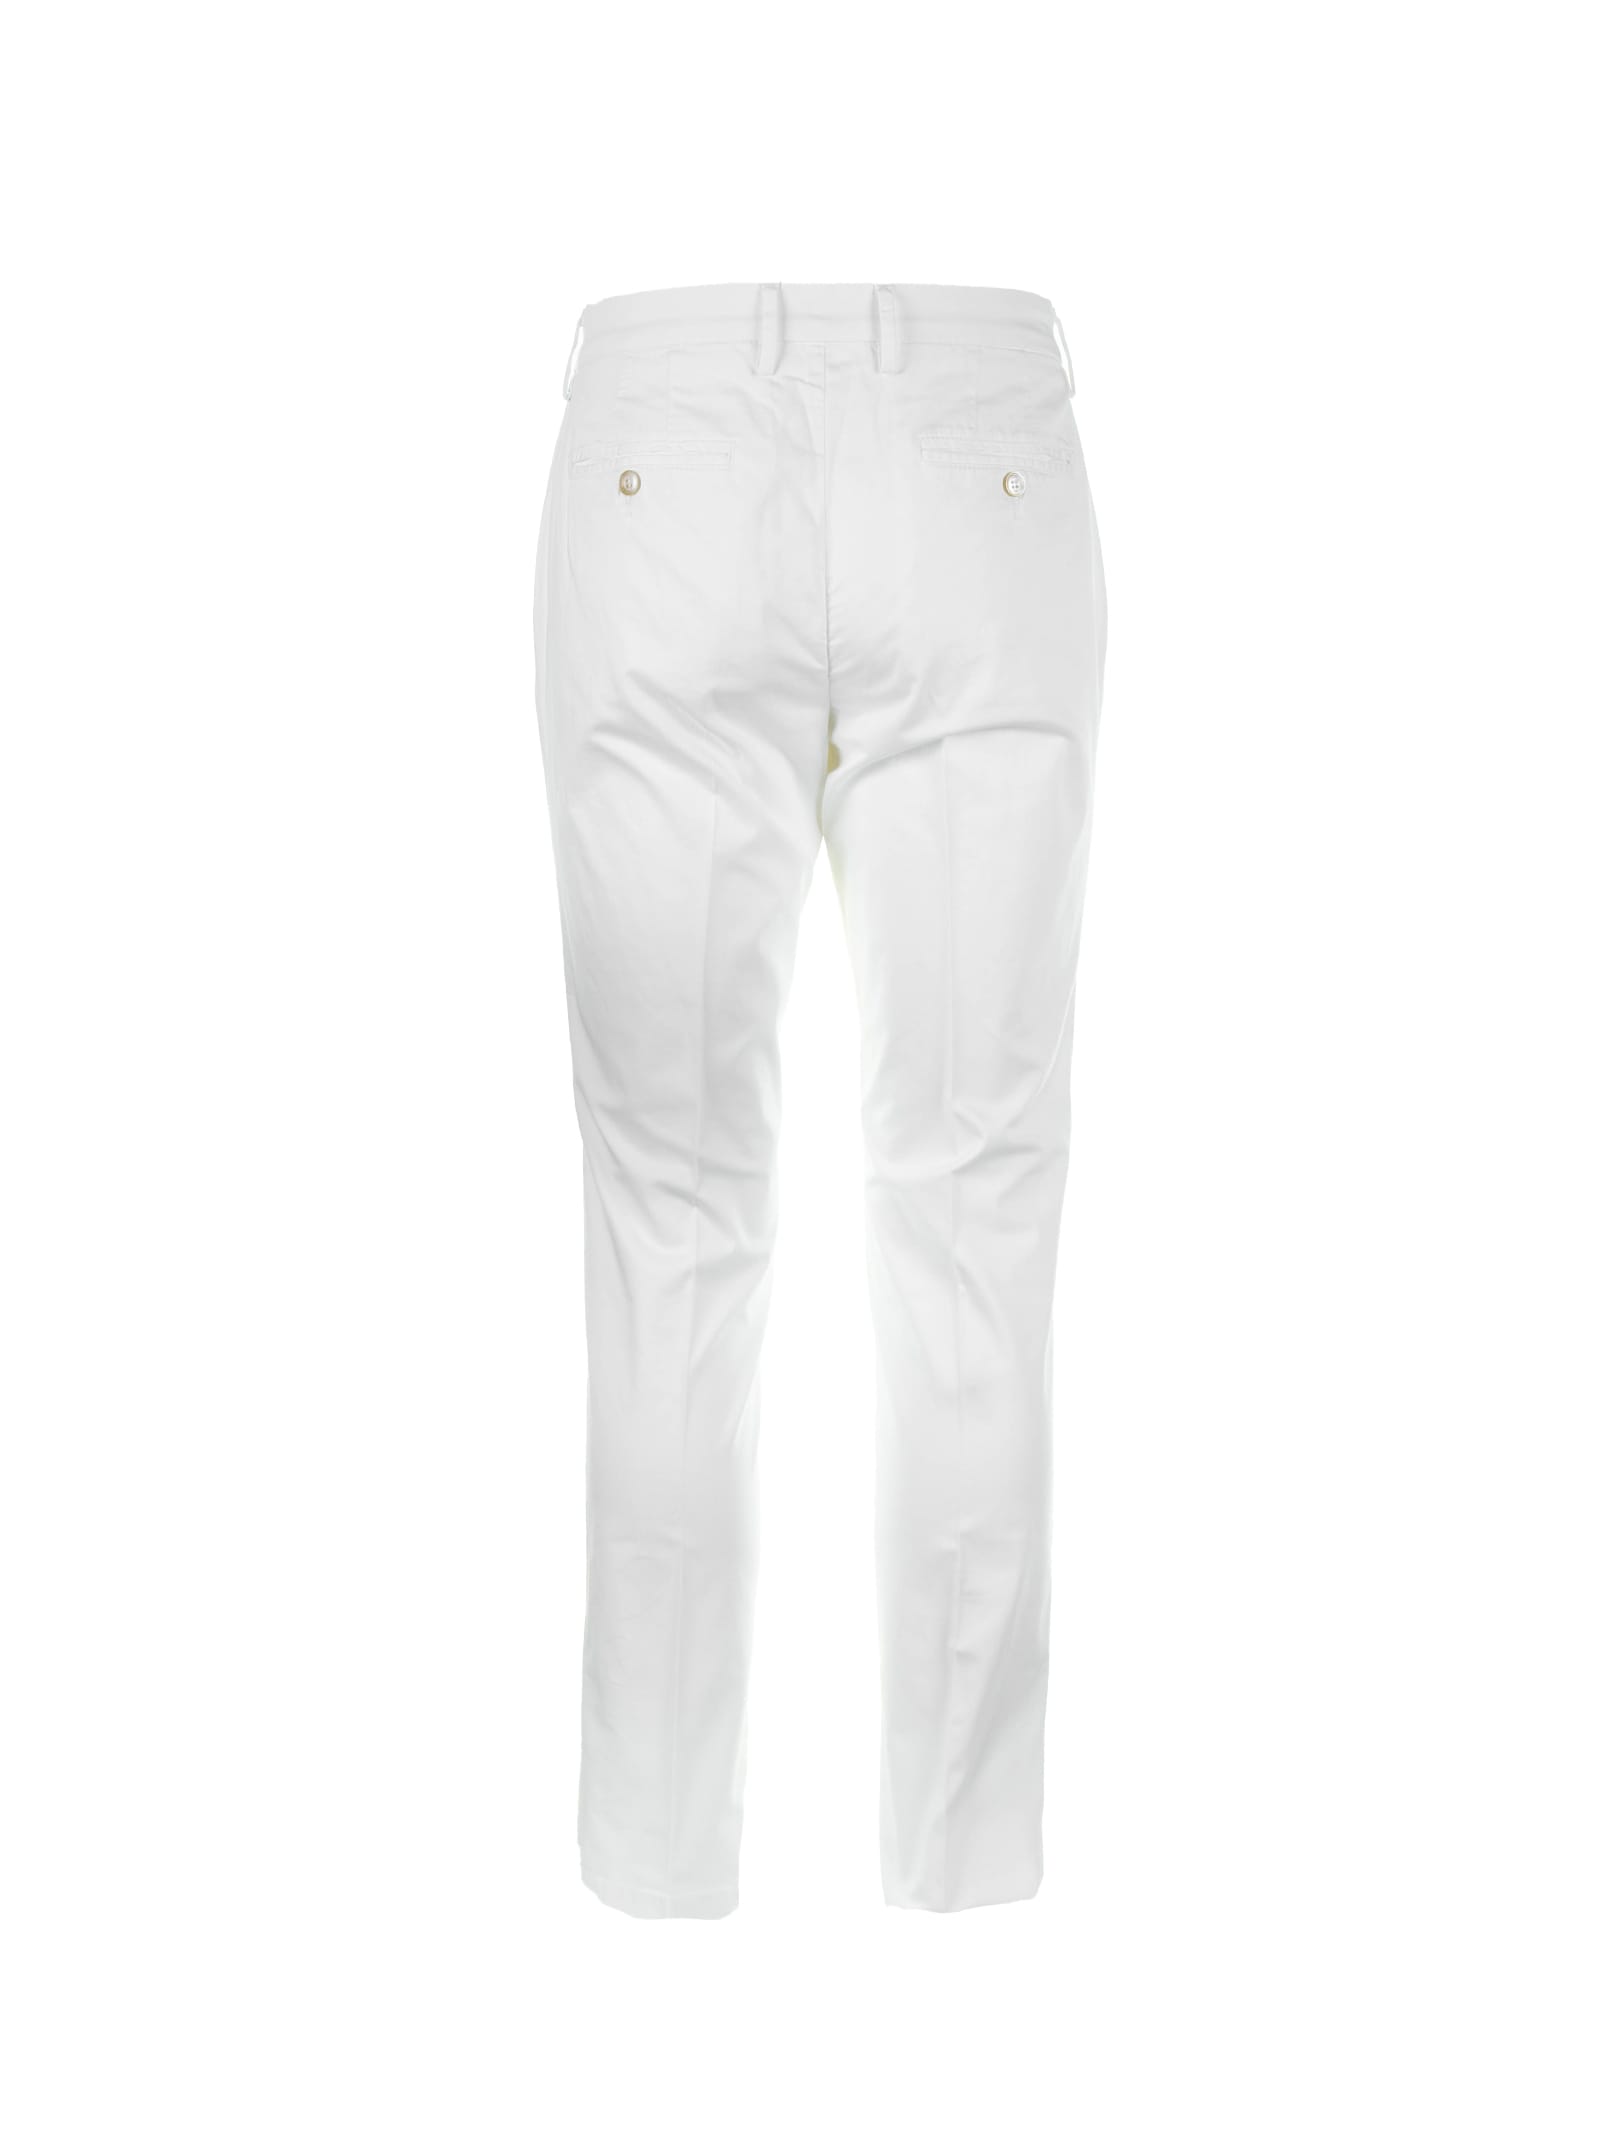 Shop Cruna Brera White Trousers In Burro